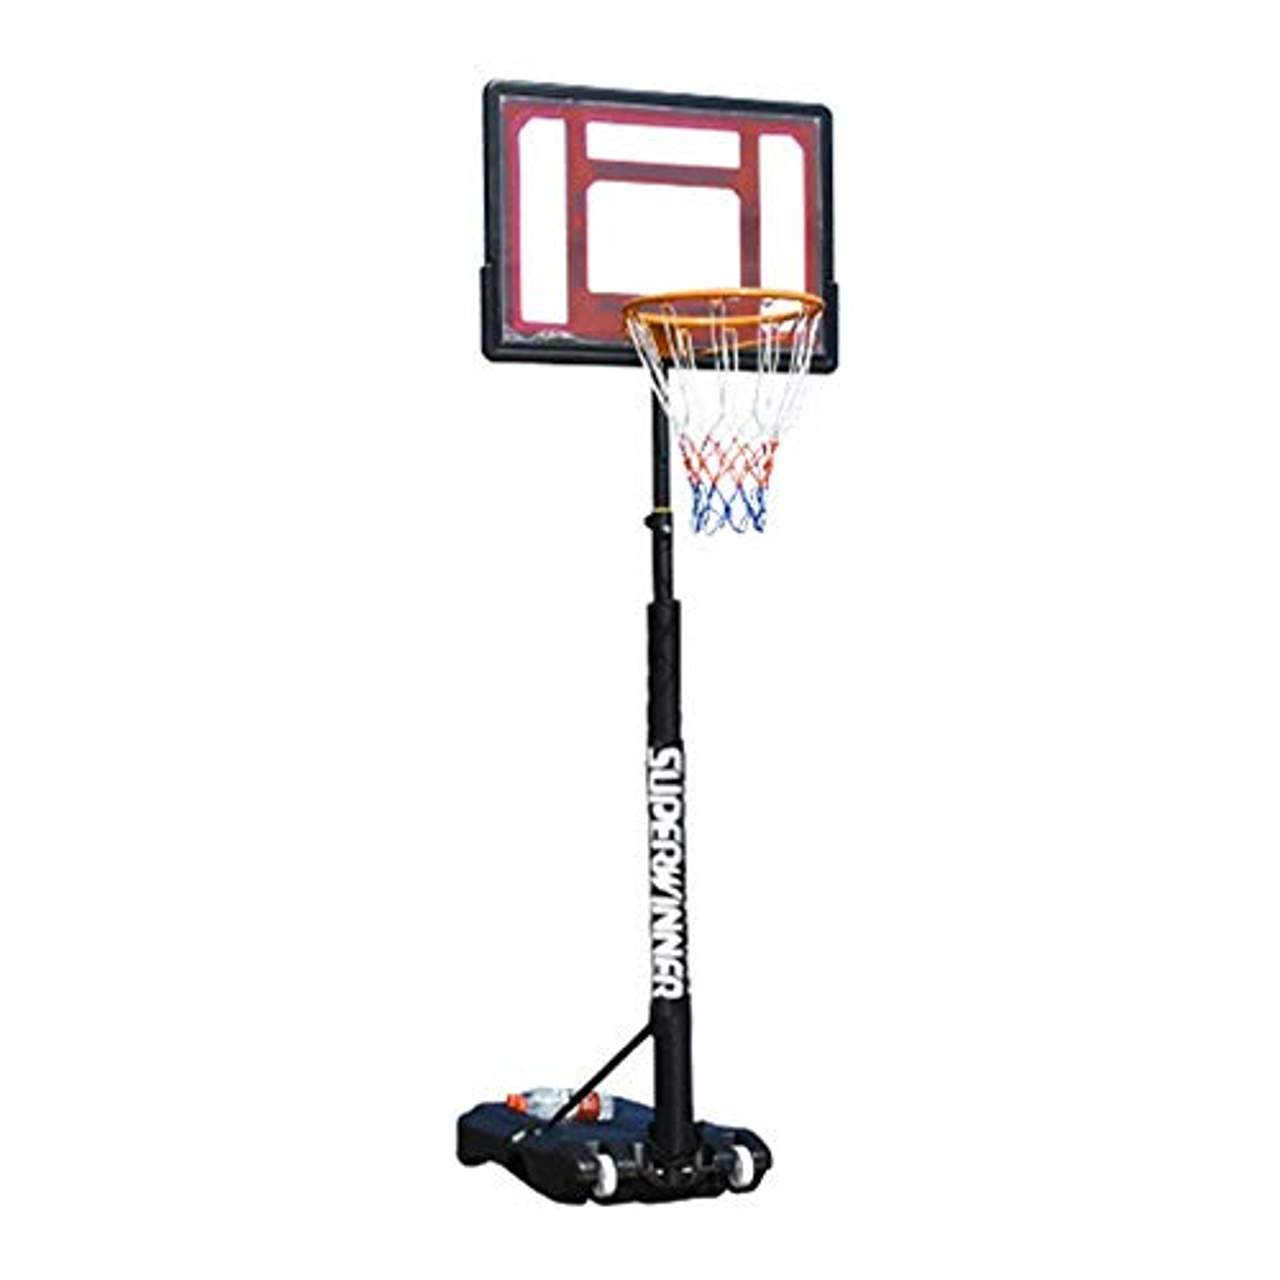 Suon Basketballständer Höhenverstellbar Von 120 Bis 210 cm Kinder- Basketballkorb